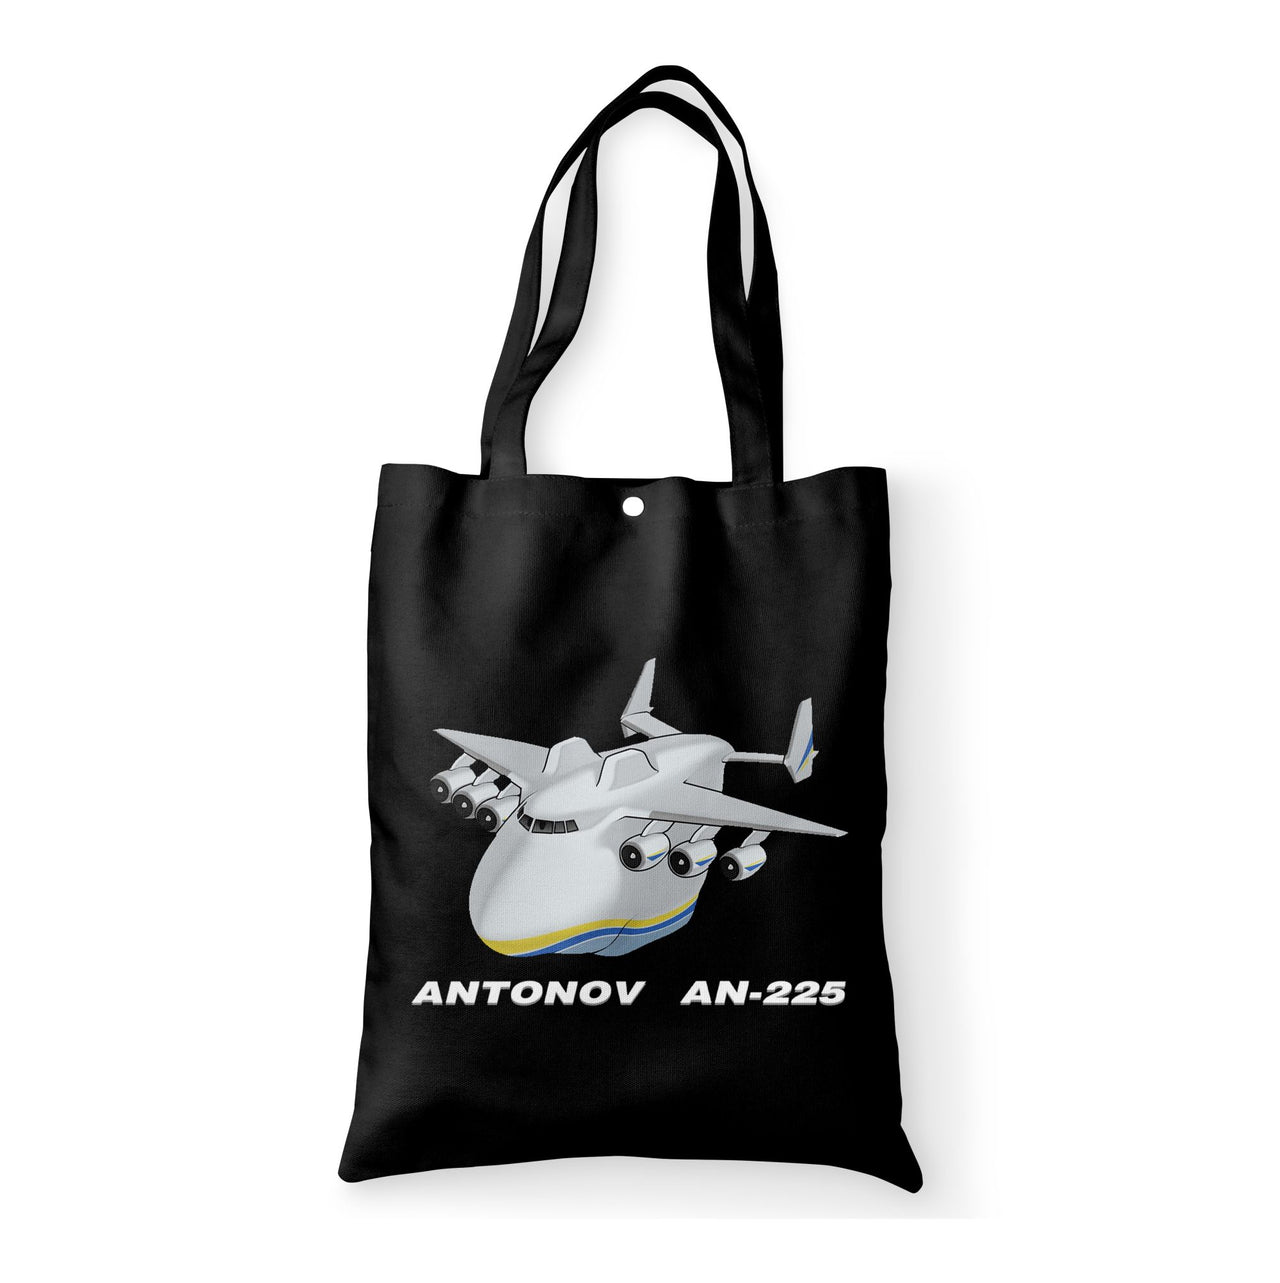 Antonov AN-225 (29) Designed Tote Bags